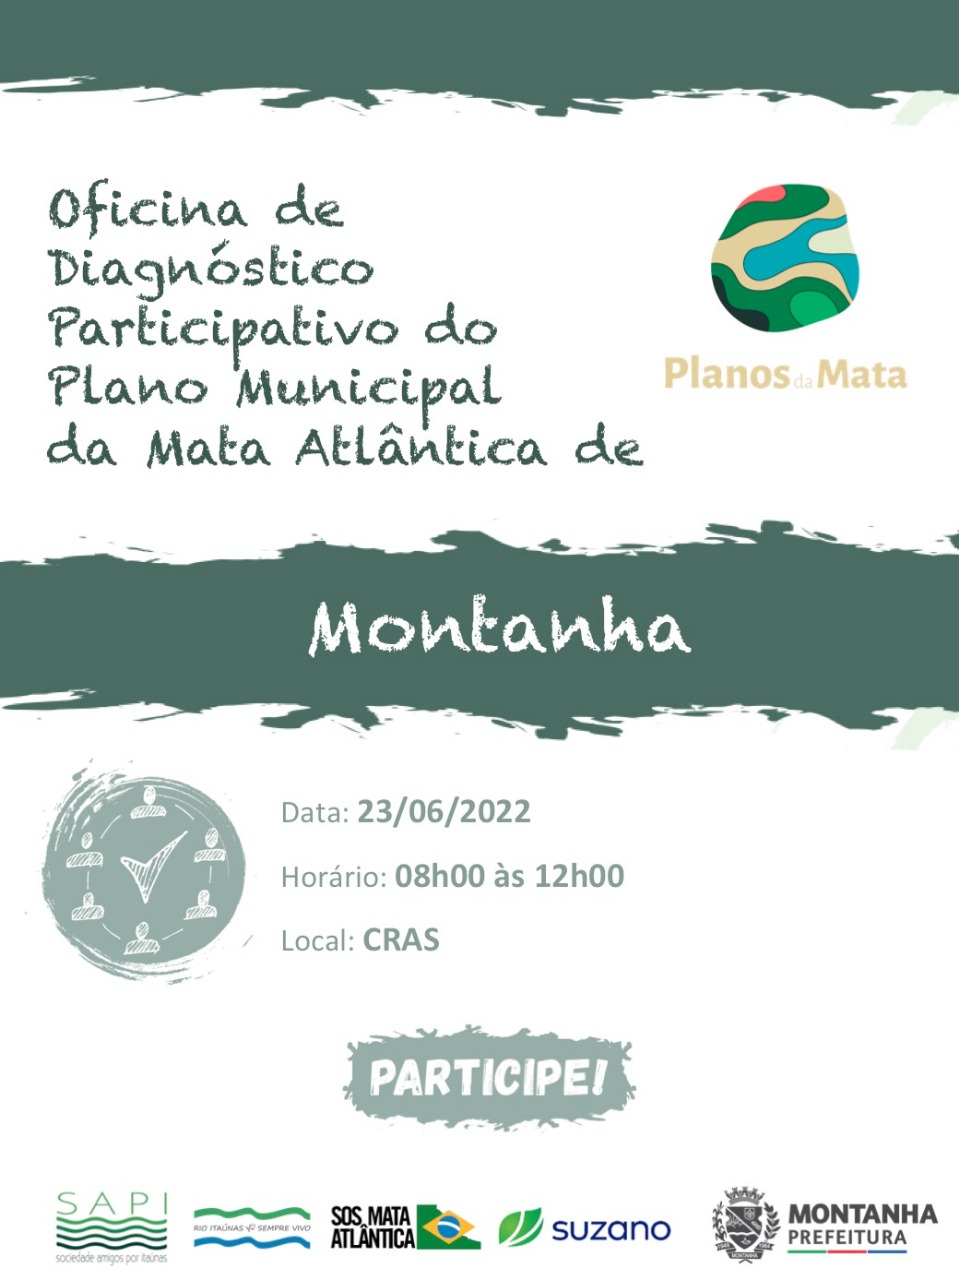 Oficina de diagnóstico participativo do Plano Municipal da Mata Atlântica em Montanha – ES